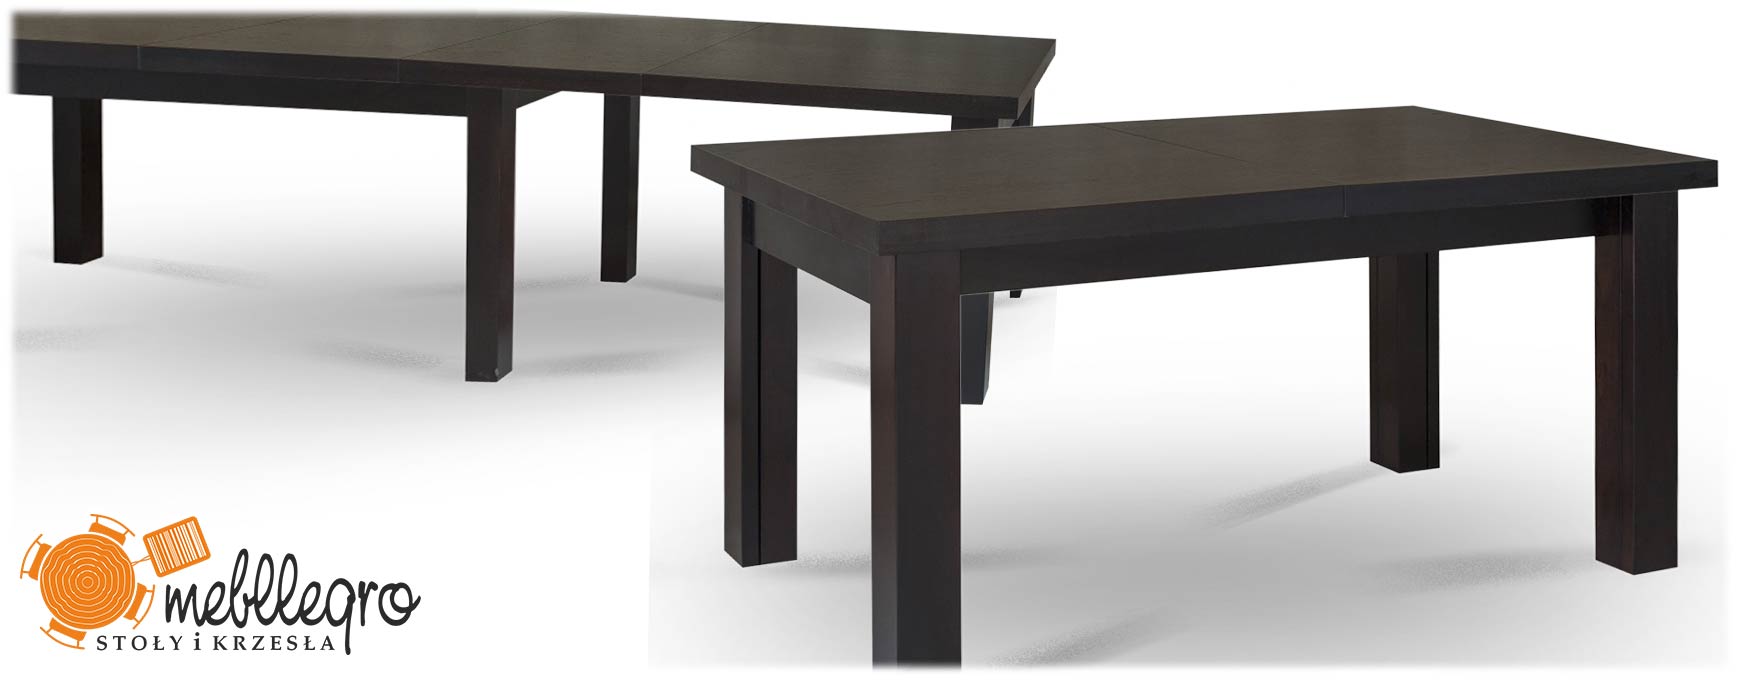 Stół S10 rozkładany drewniany 8 nóg